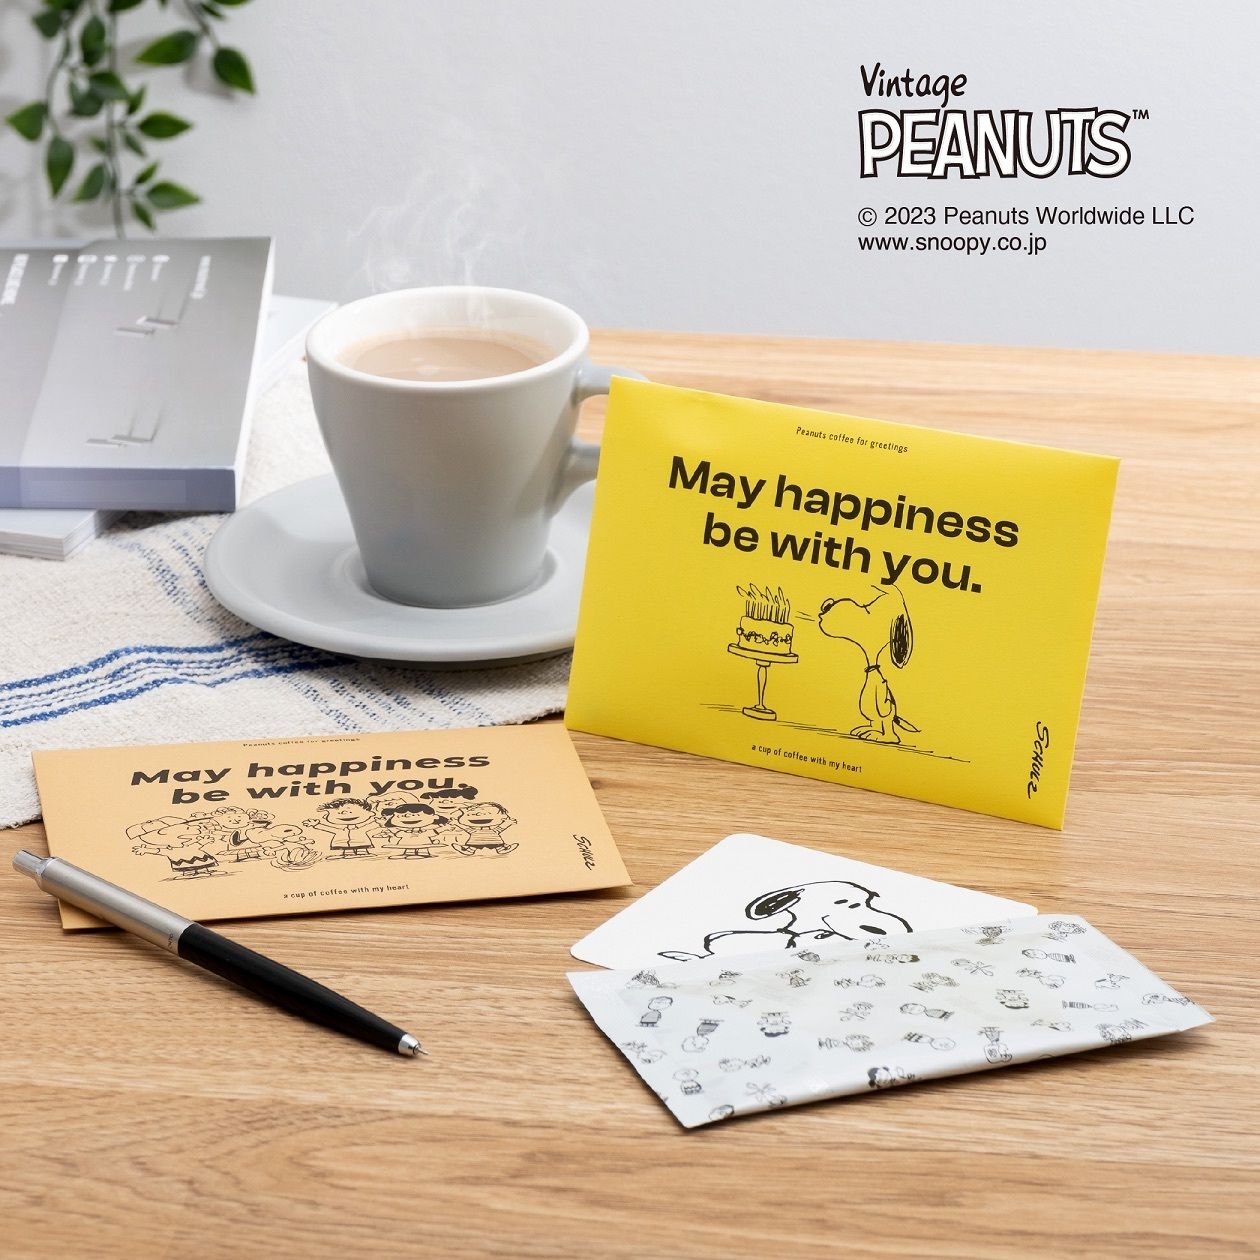 【SNOOPY coffee】気持ちを伝える封筒型コーヒーギフト新発売。3種類のメッセージを描いたカラフルなデザインと本格コーヒーが、感謝やお祝いの気持ちをさらに温かく伝えます。 #Z世代Pick